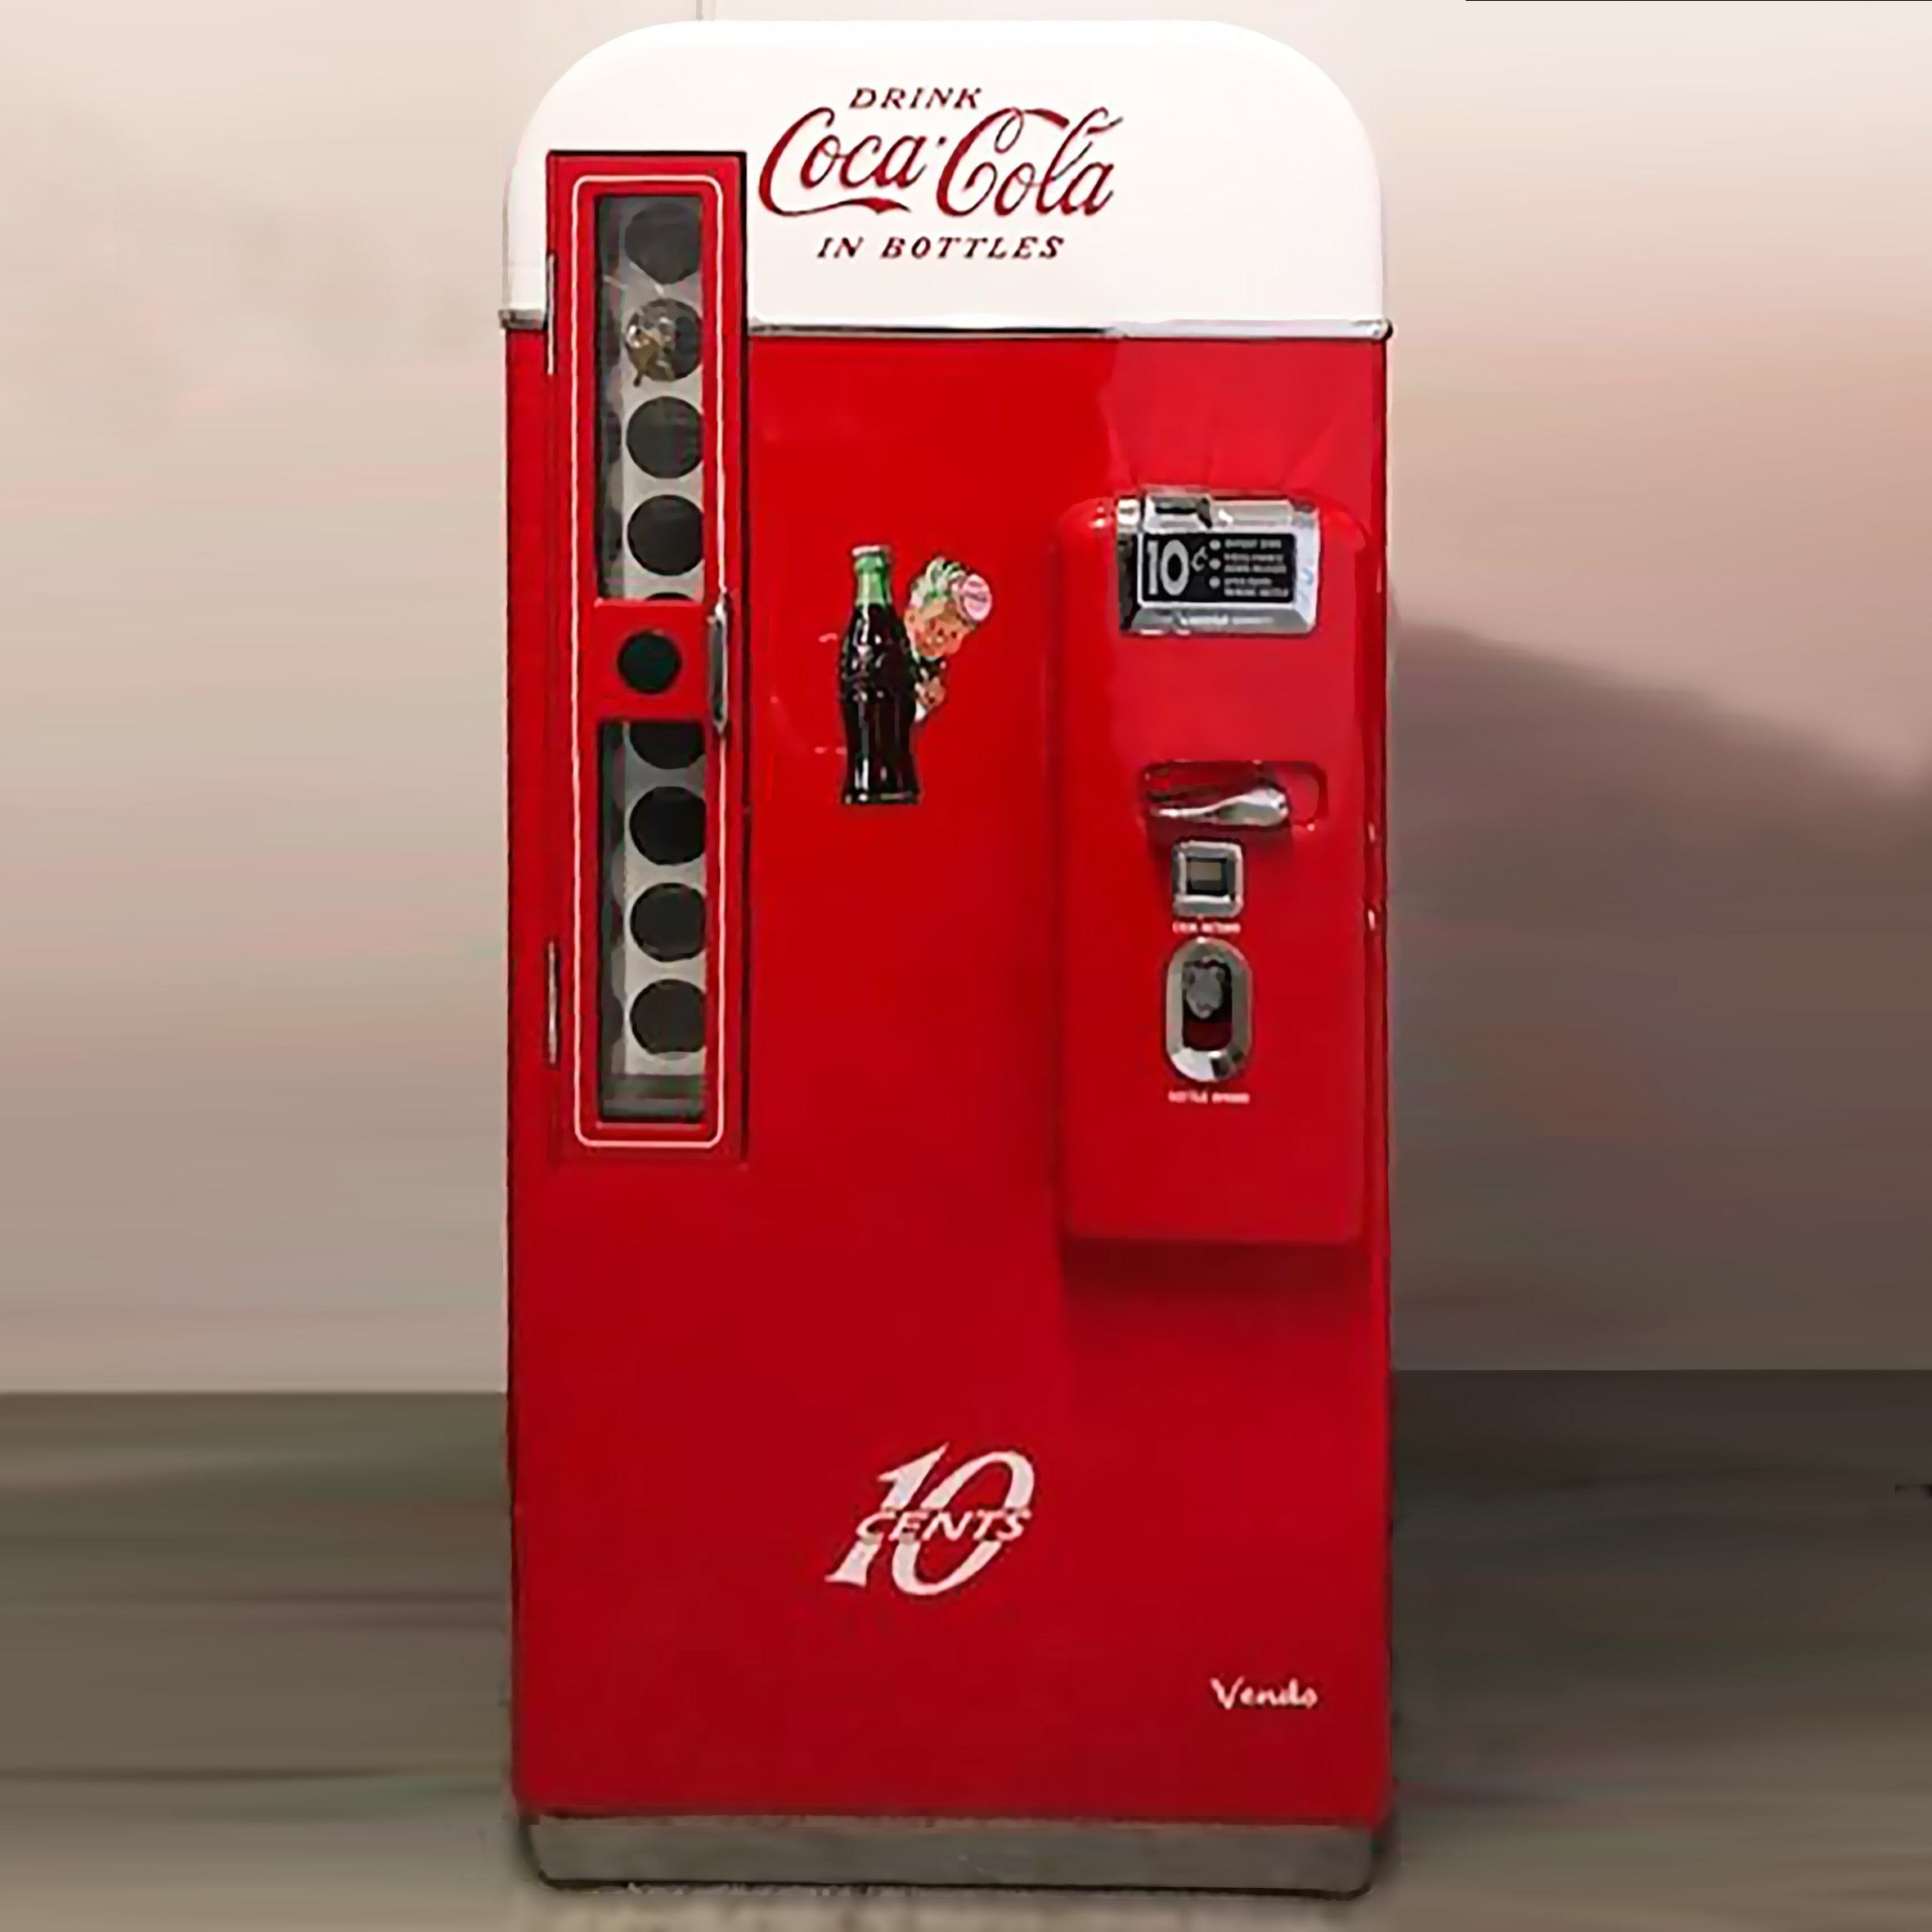 Vendo 81-A Coca-Cola Machine – The Games Room Company